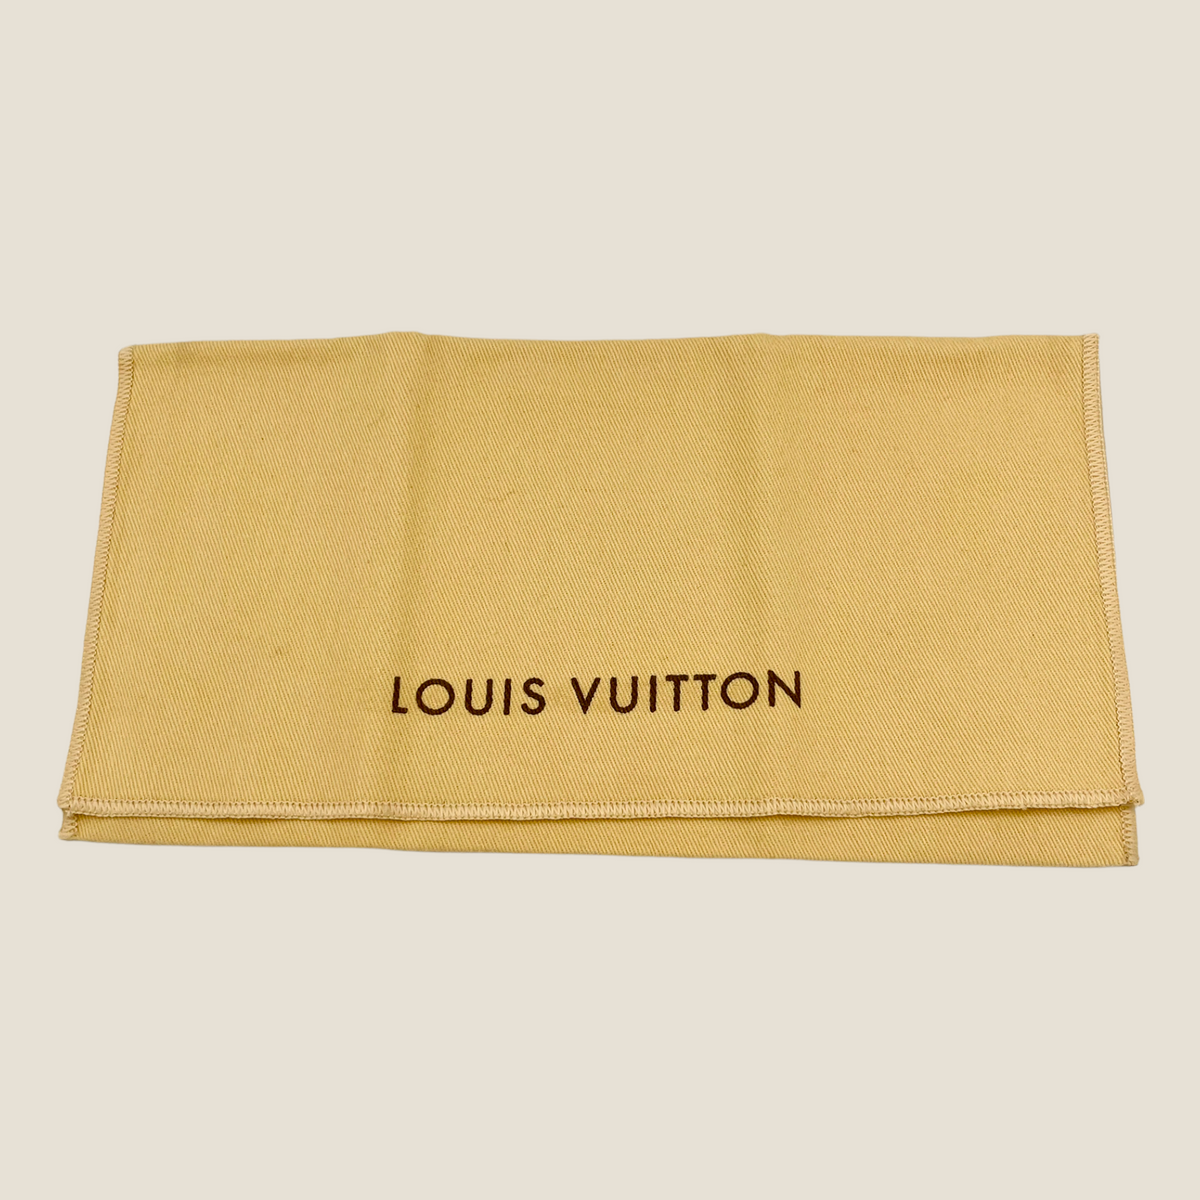 Louis Vuitton Wallet Dust Bag - Gem